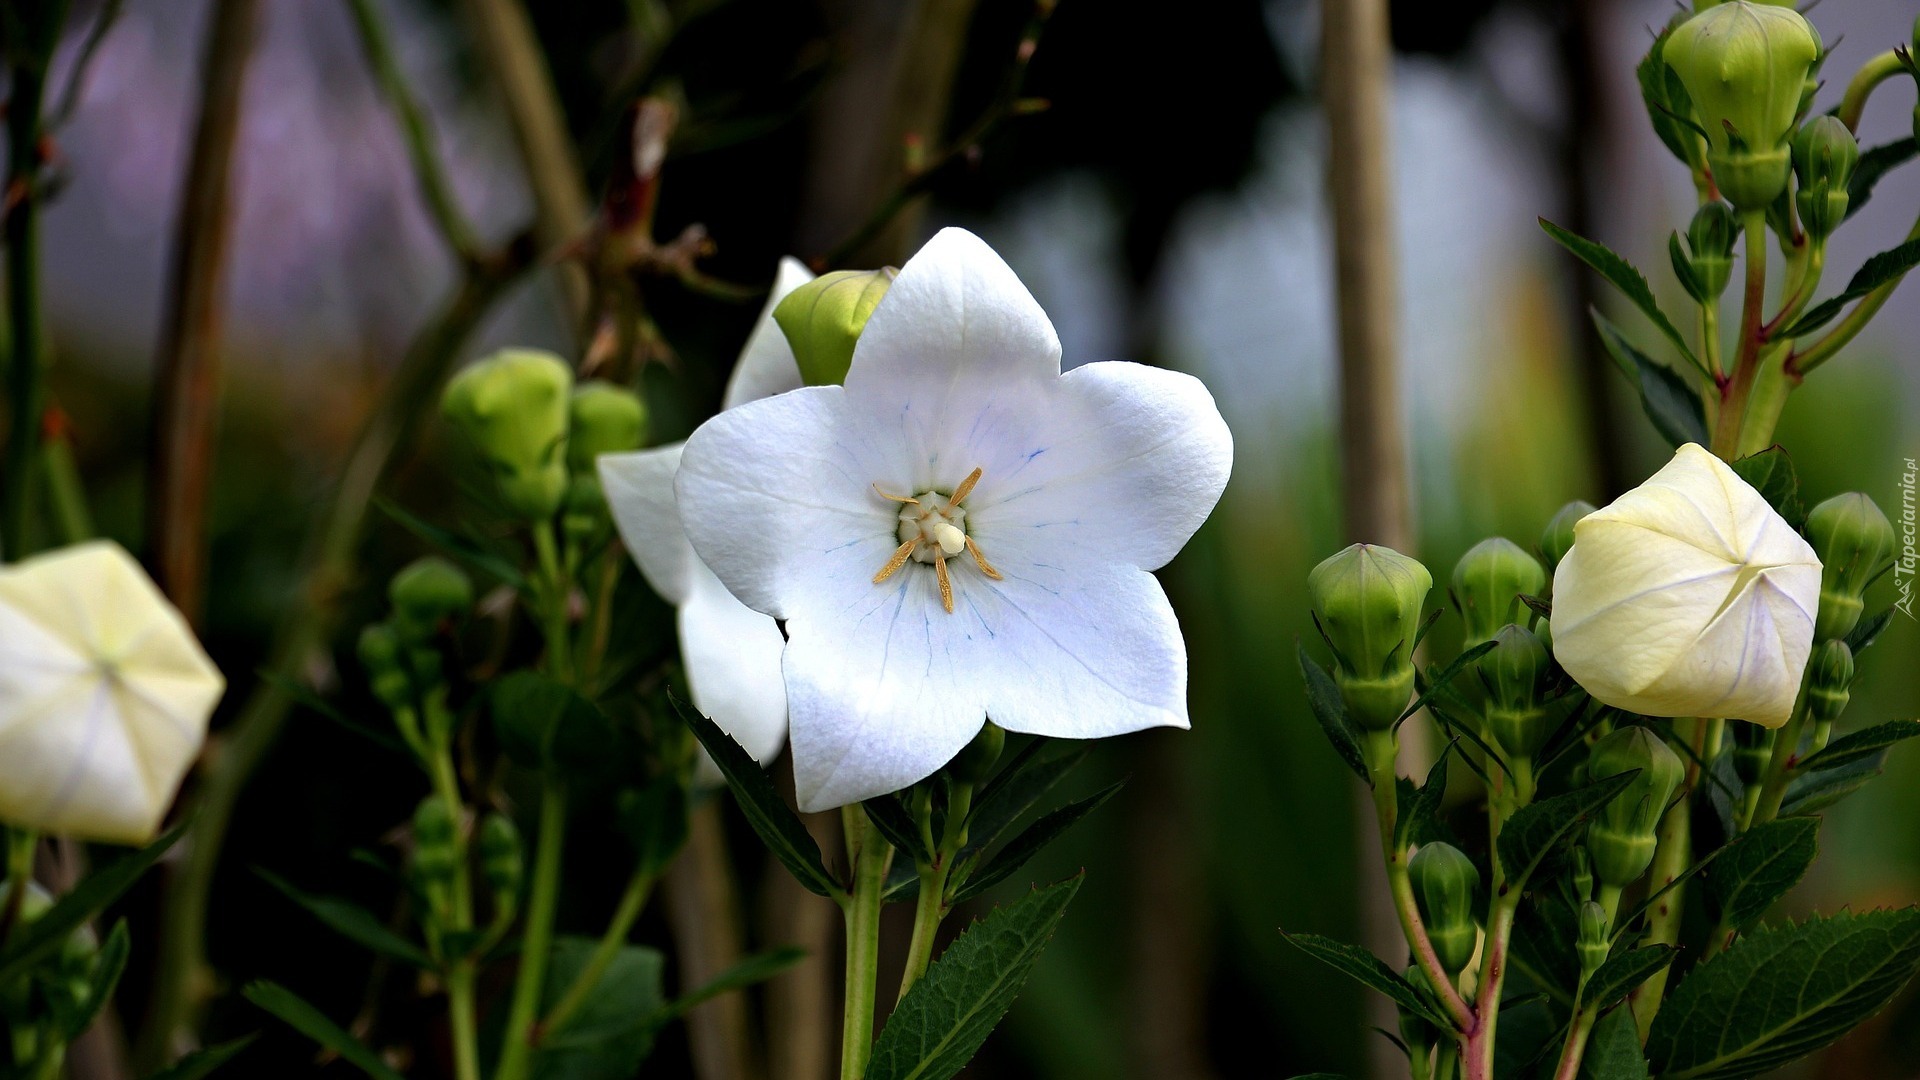 Białe, Kwiaty, Campanula, Dzwonek brzoskwiniolistny